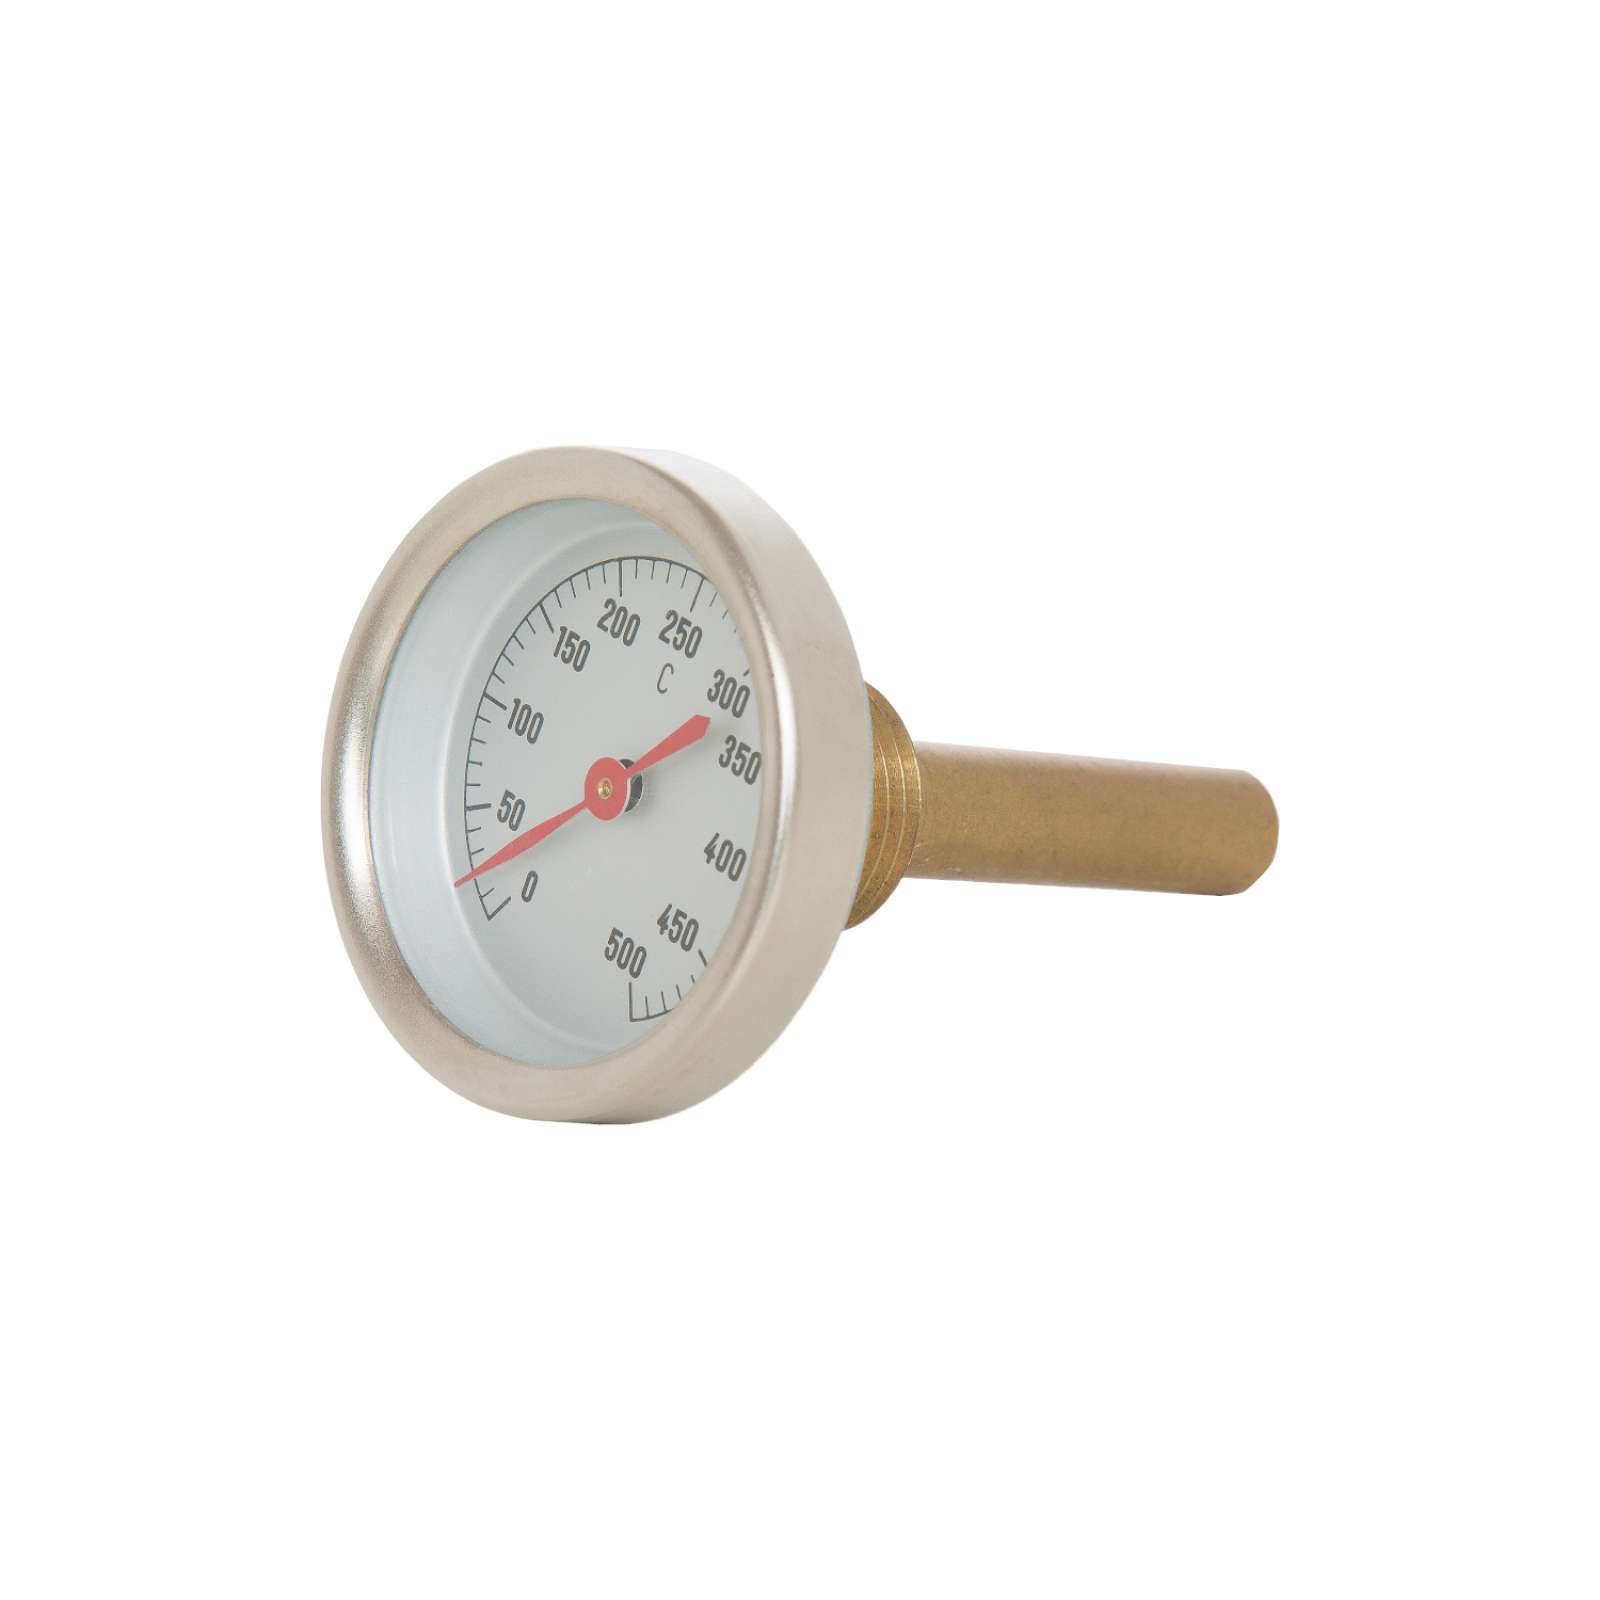 Schneider Backofen-Thermometer 0-500°C für Holzbackofen Woody Backes